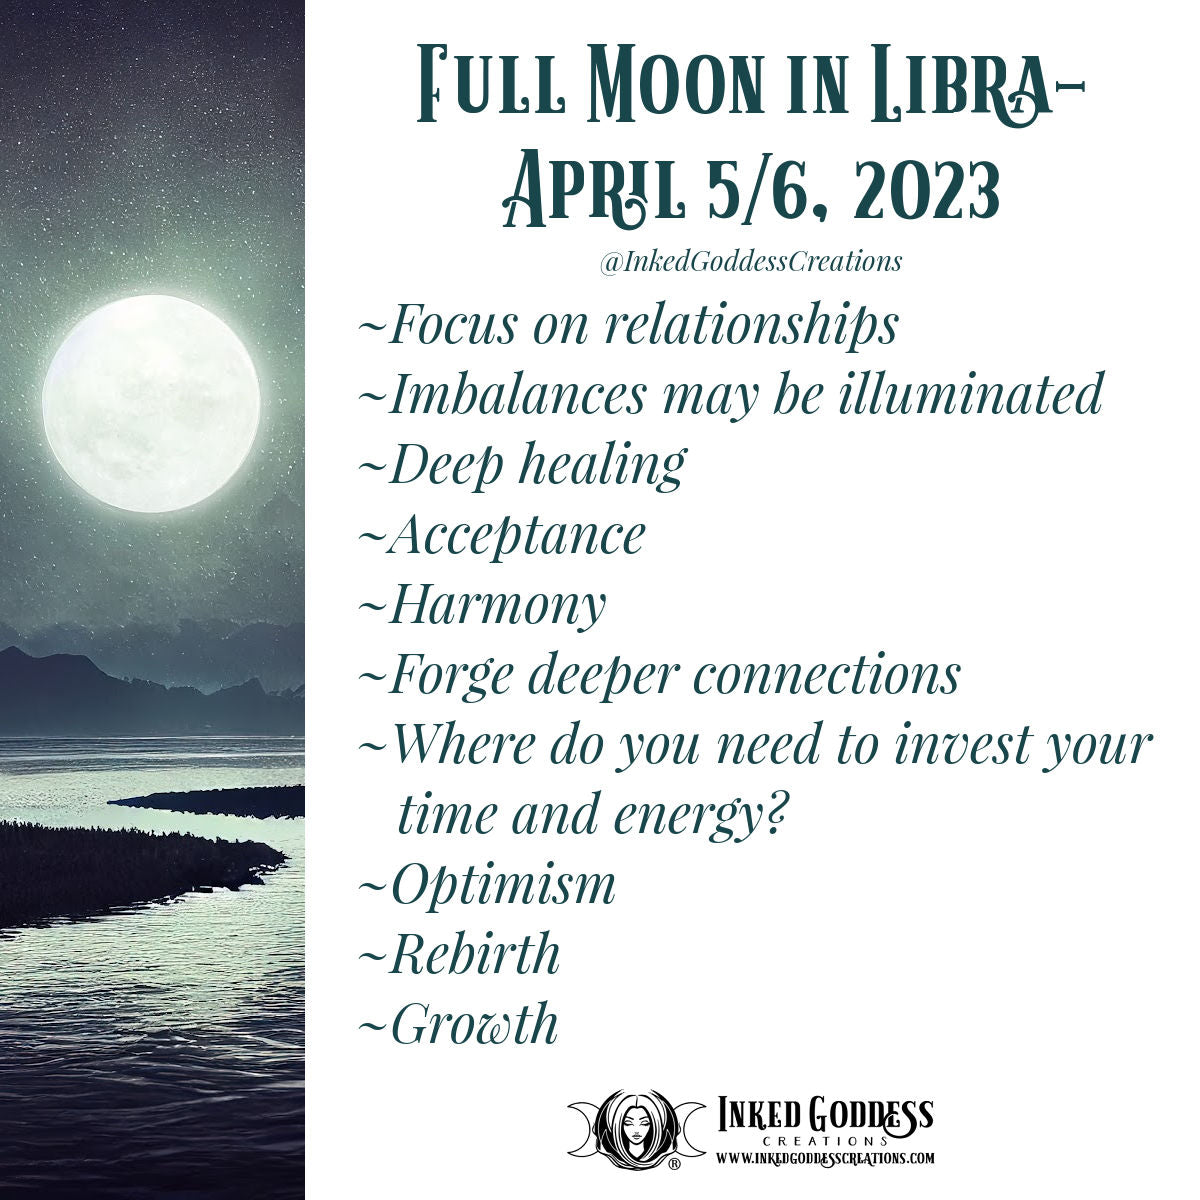 Full Moon in Libra- April 5/6, 2023